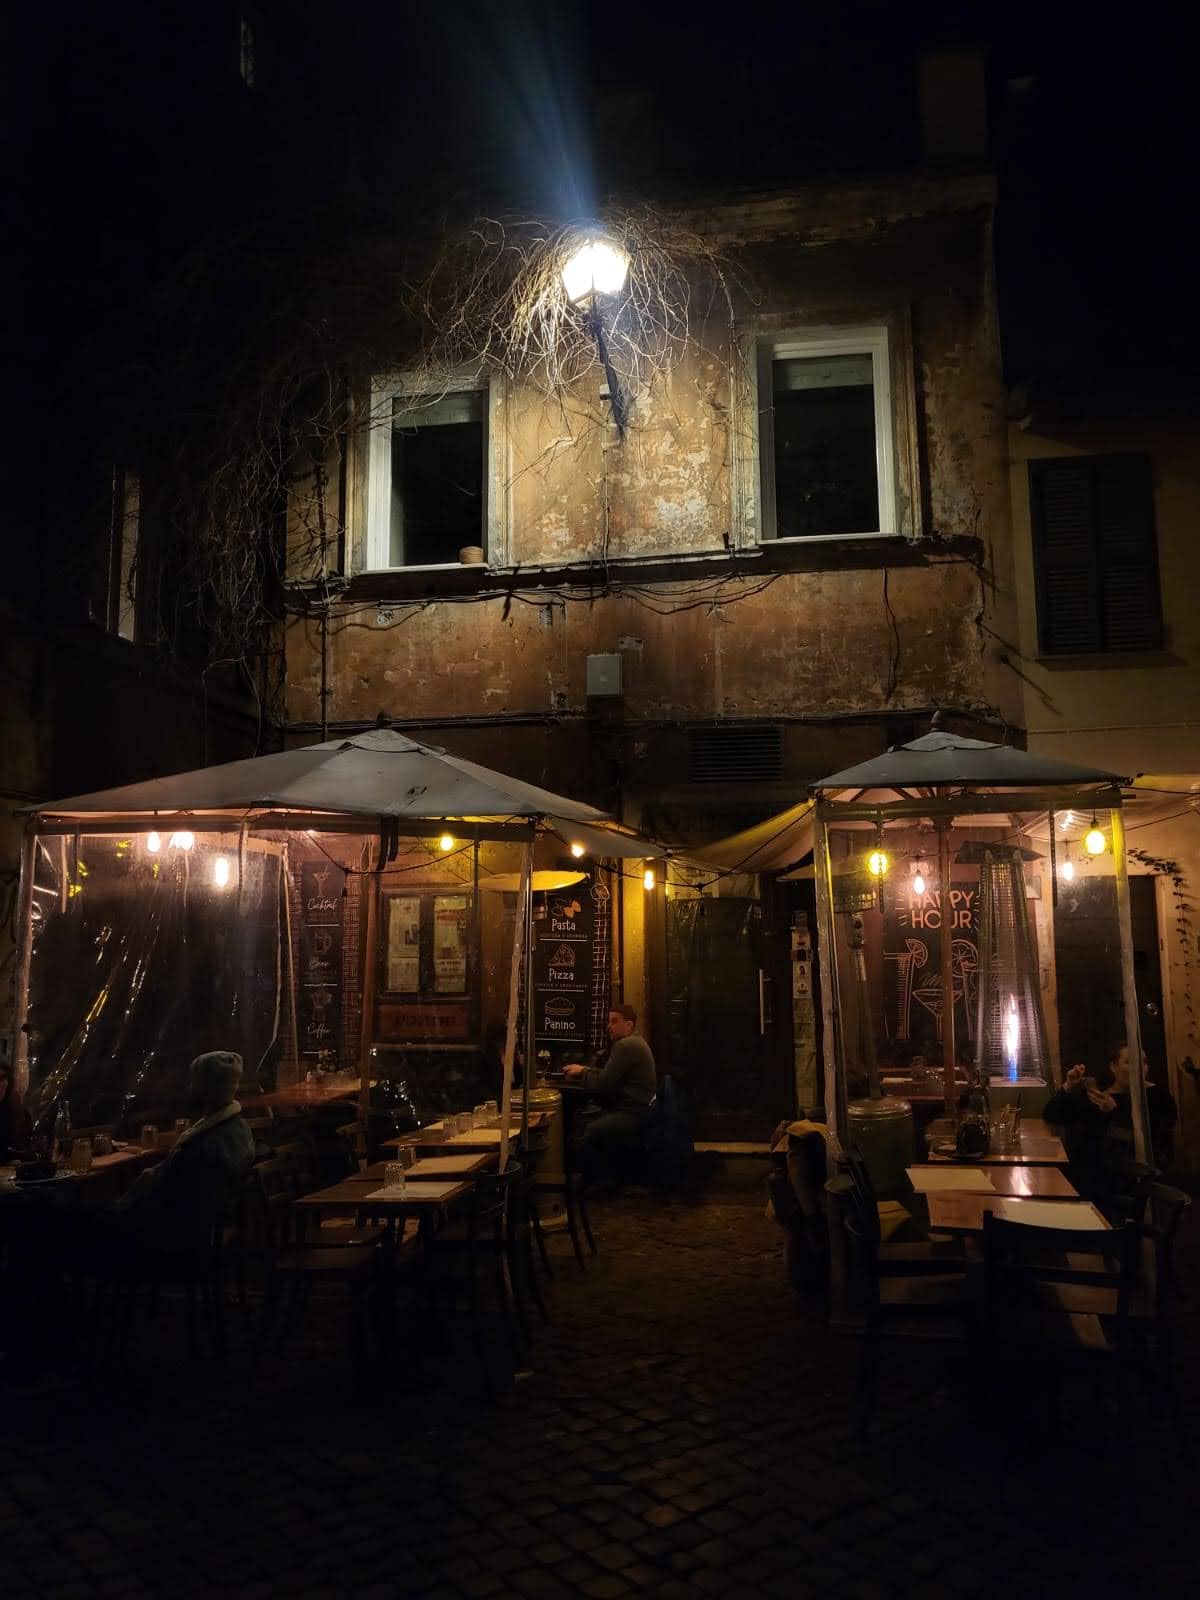 Cena noturna de um restaurante ao ar livre com mesas vazias e uma iluminação suave, em frente a uma fachada rústica e envelhecida, transmitindo uma atmosfera acolhedora e tranquila no bairro Trastevere em Roma.